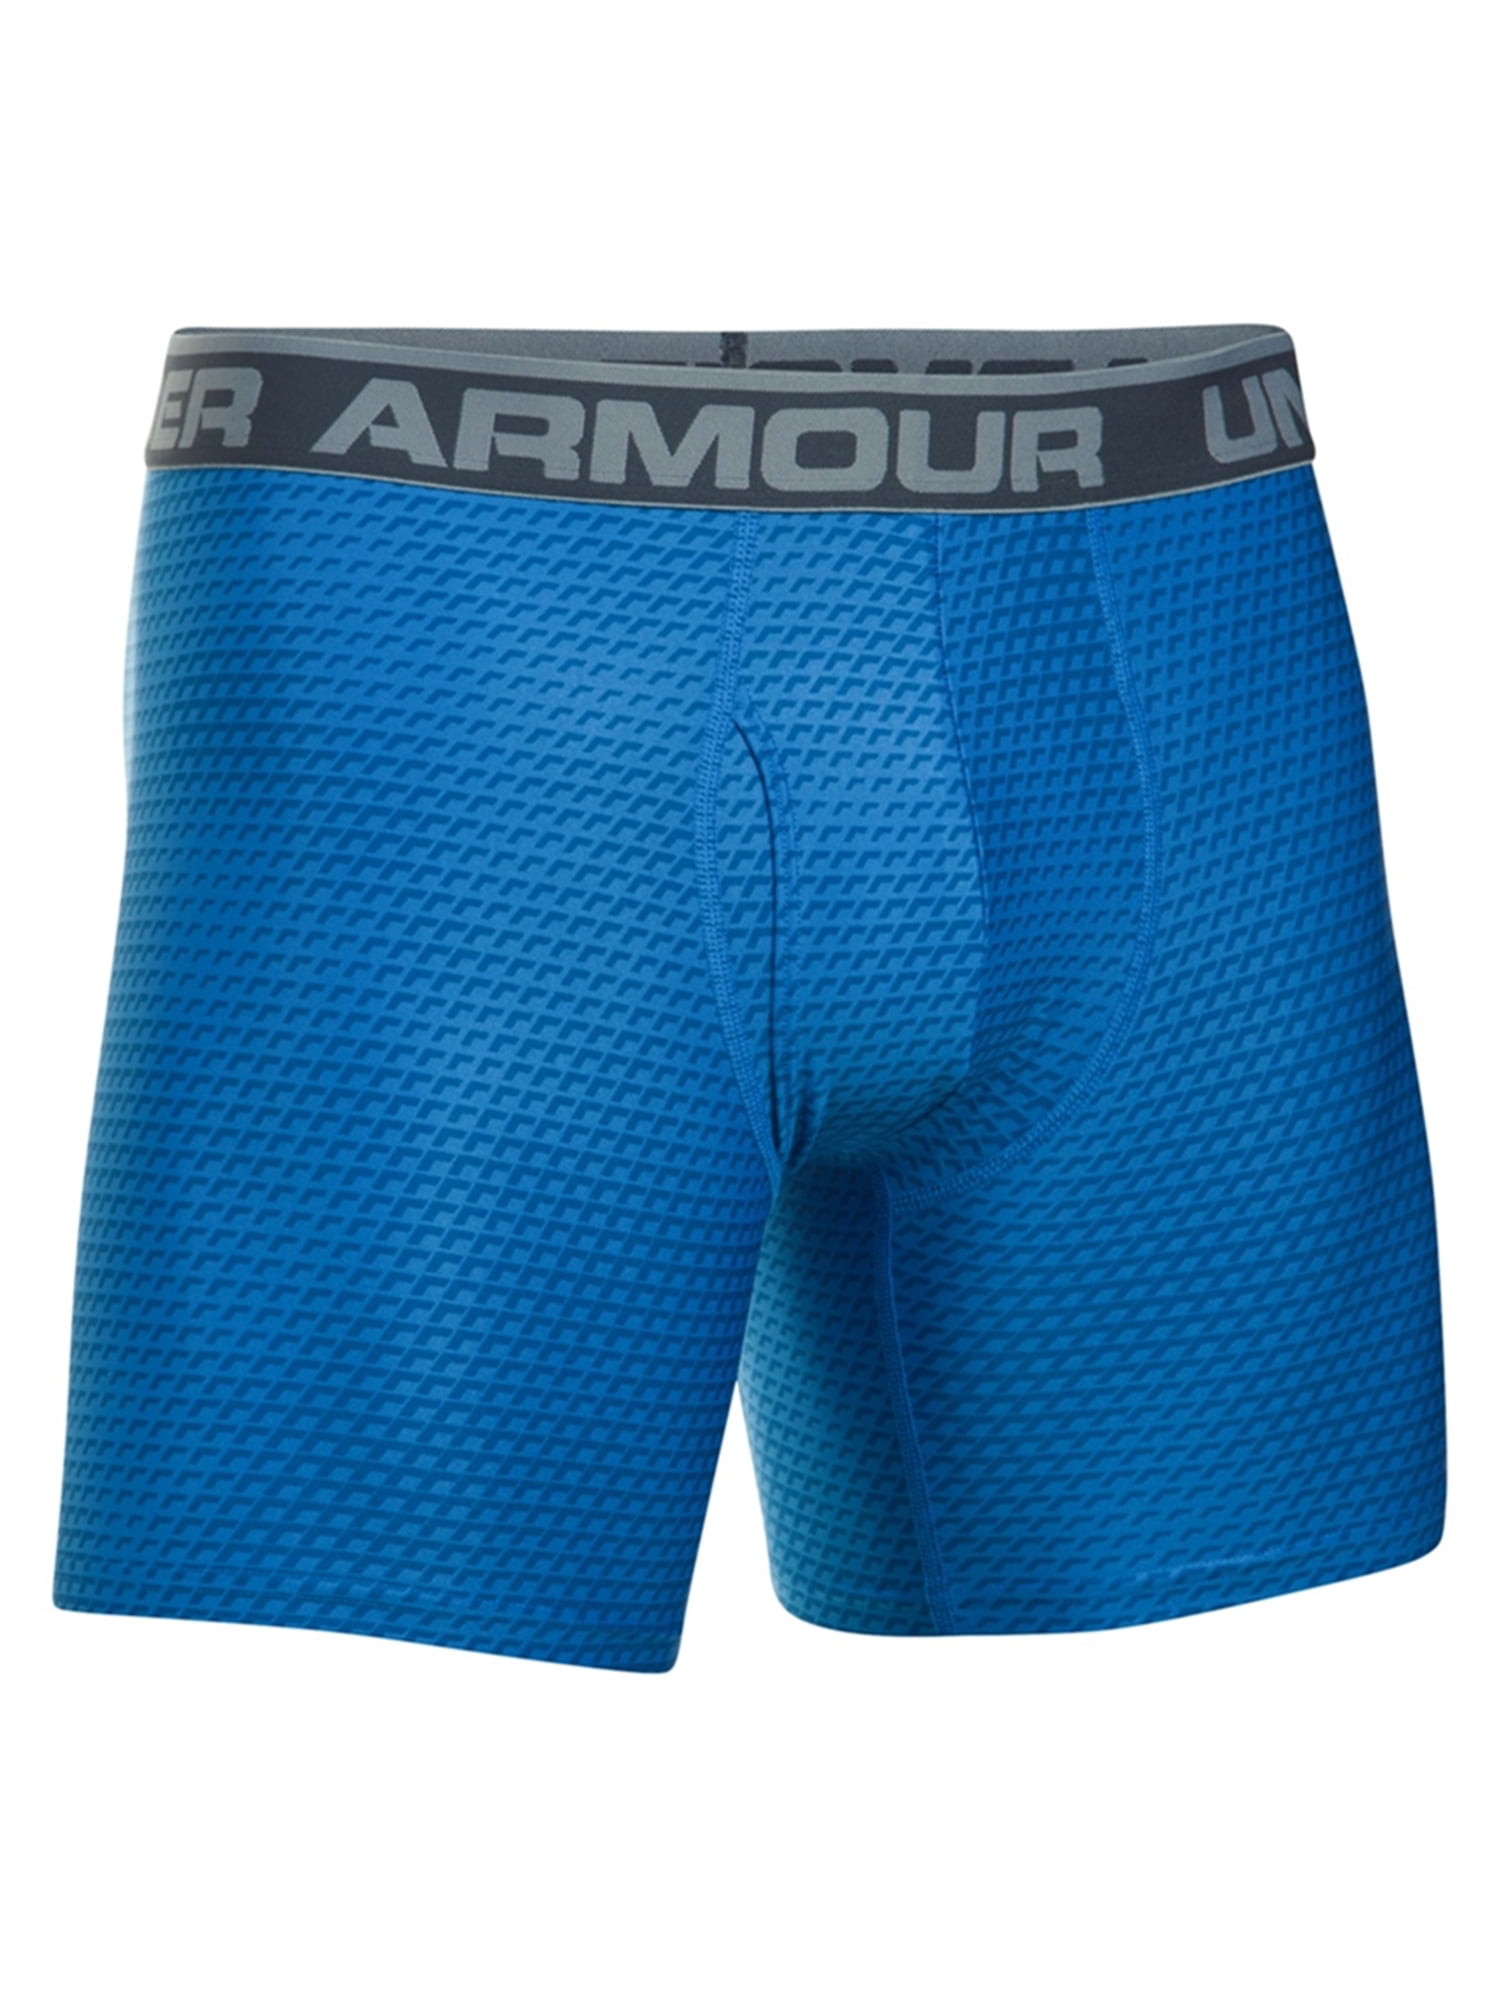 Under Armour Mens Anti-Odor Underwear Boxer Briefs 787 S/No Inseam ...